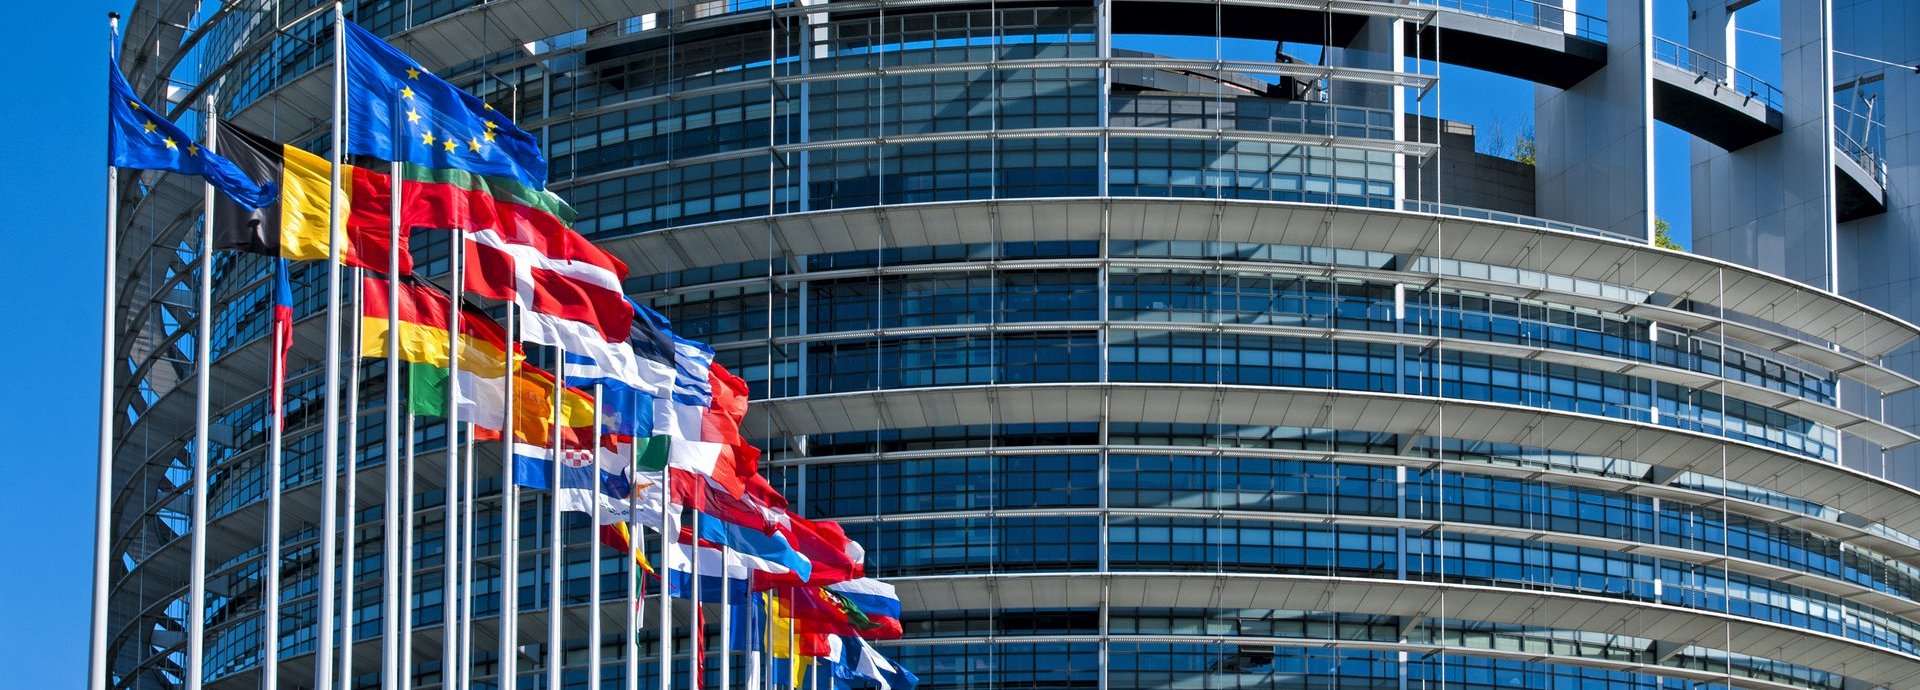 EU Parlamentsgebäude mit europäischen Flaggen vor blauem wolkenfreiem Himmel